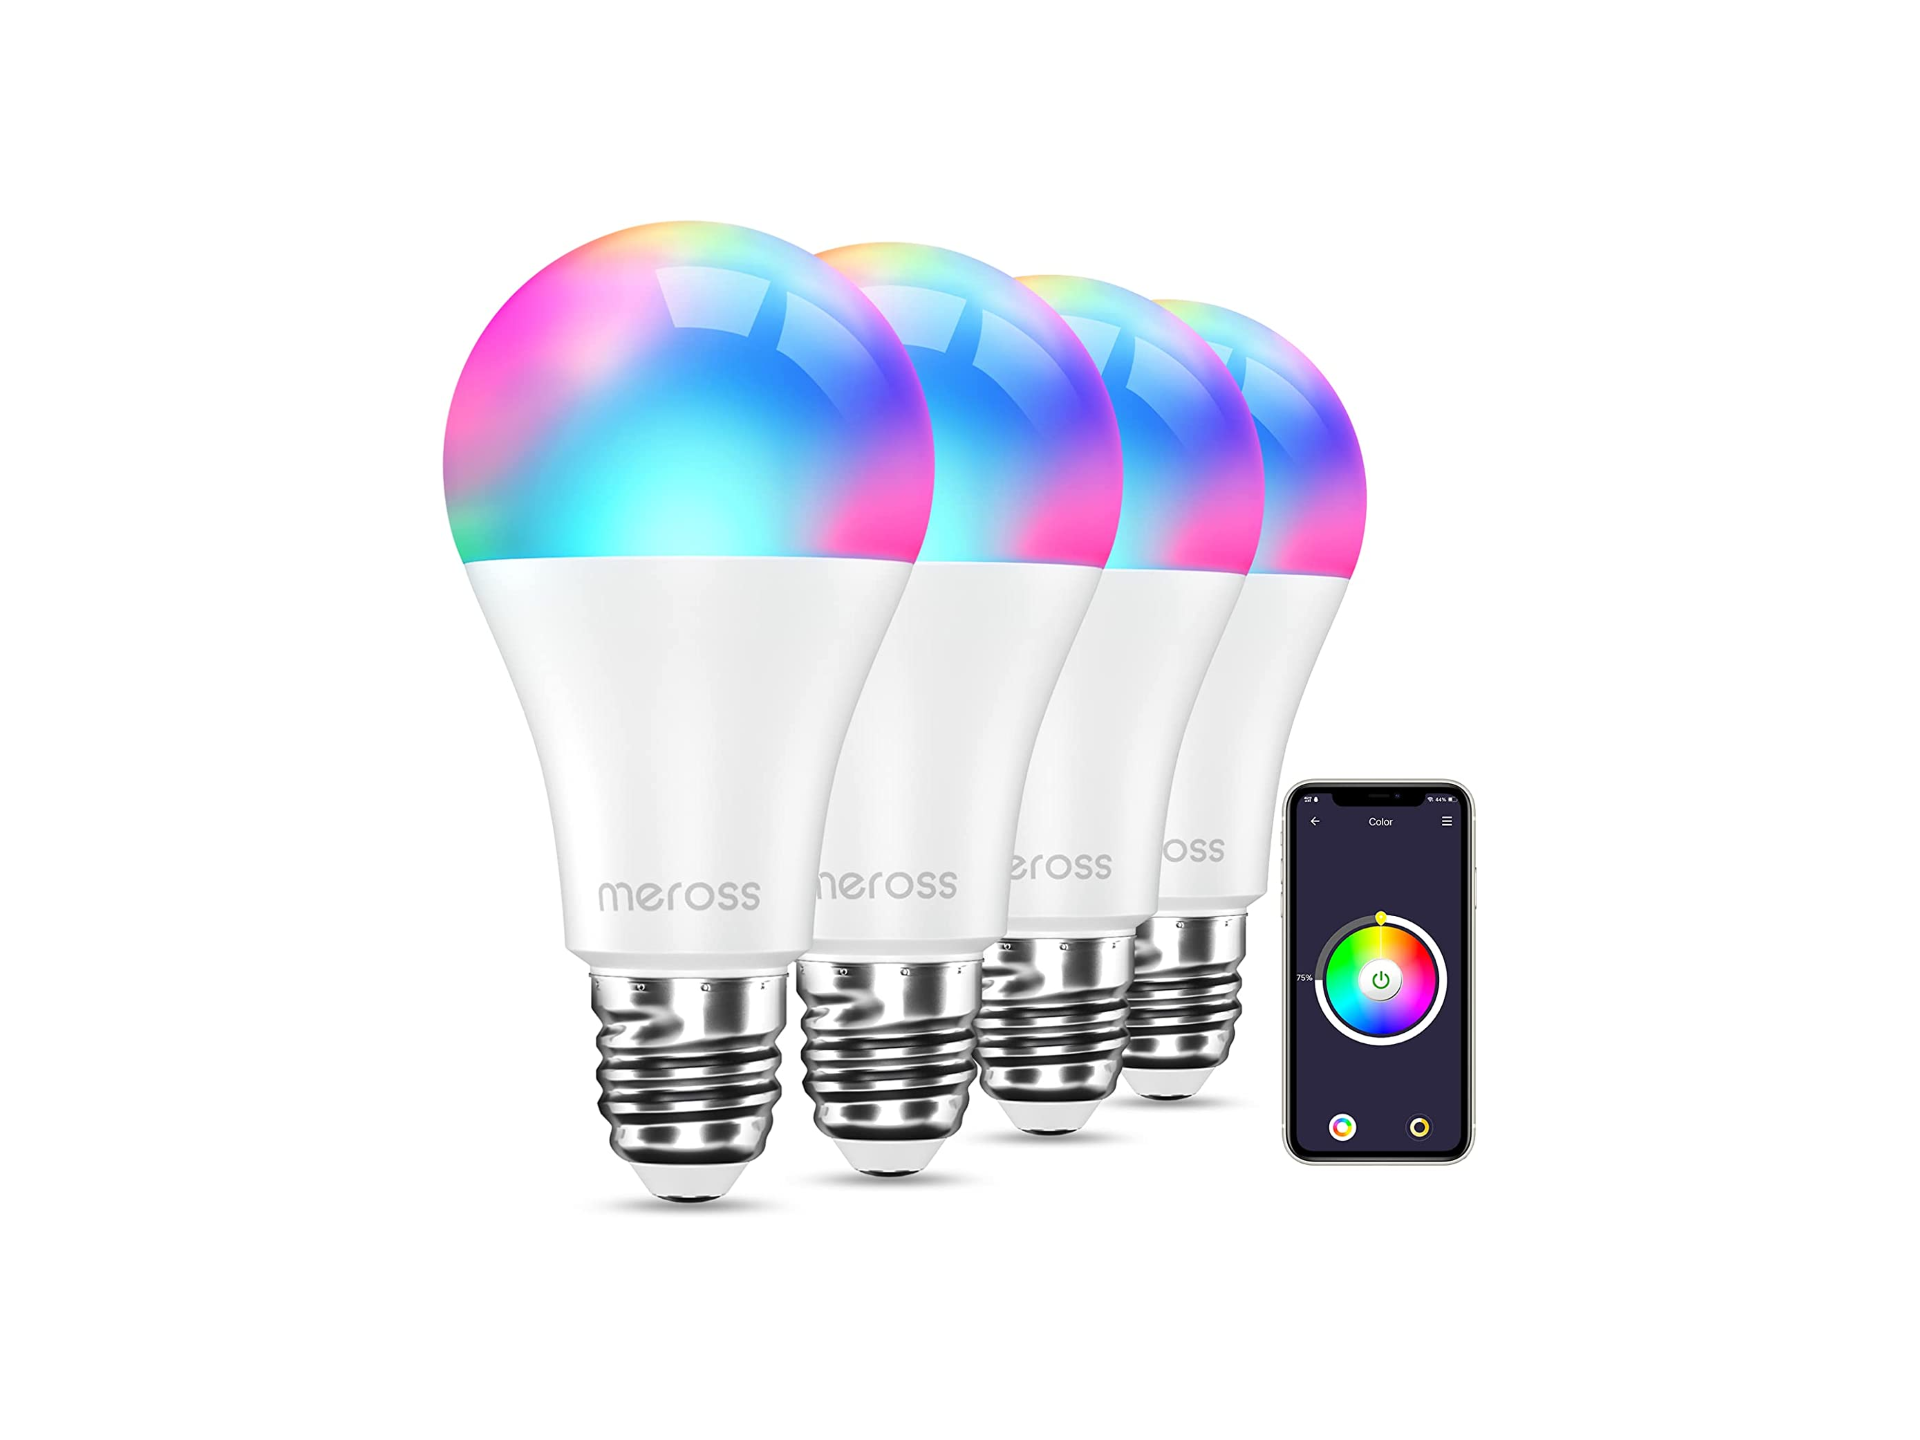 Illuminate la vostra smart home con questo kit di lampadine Wi-Fi in offerta